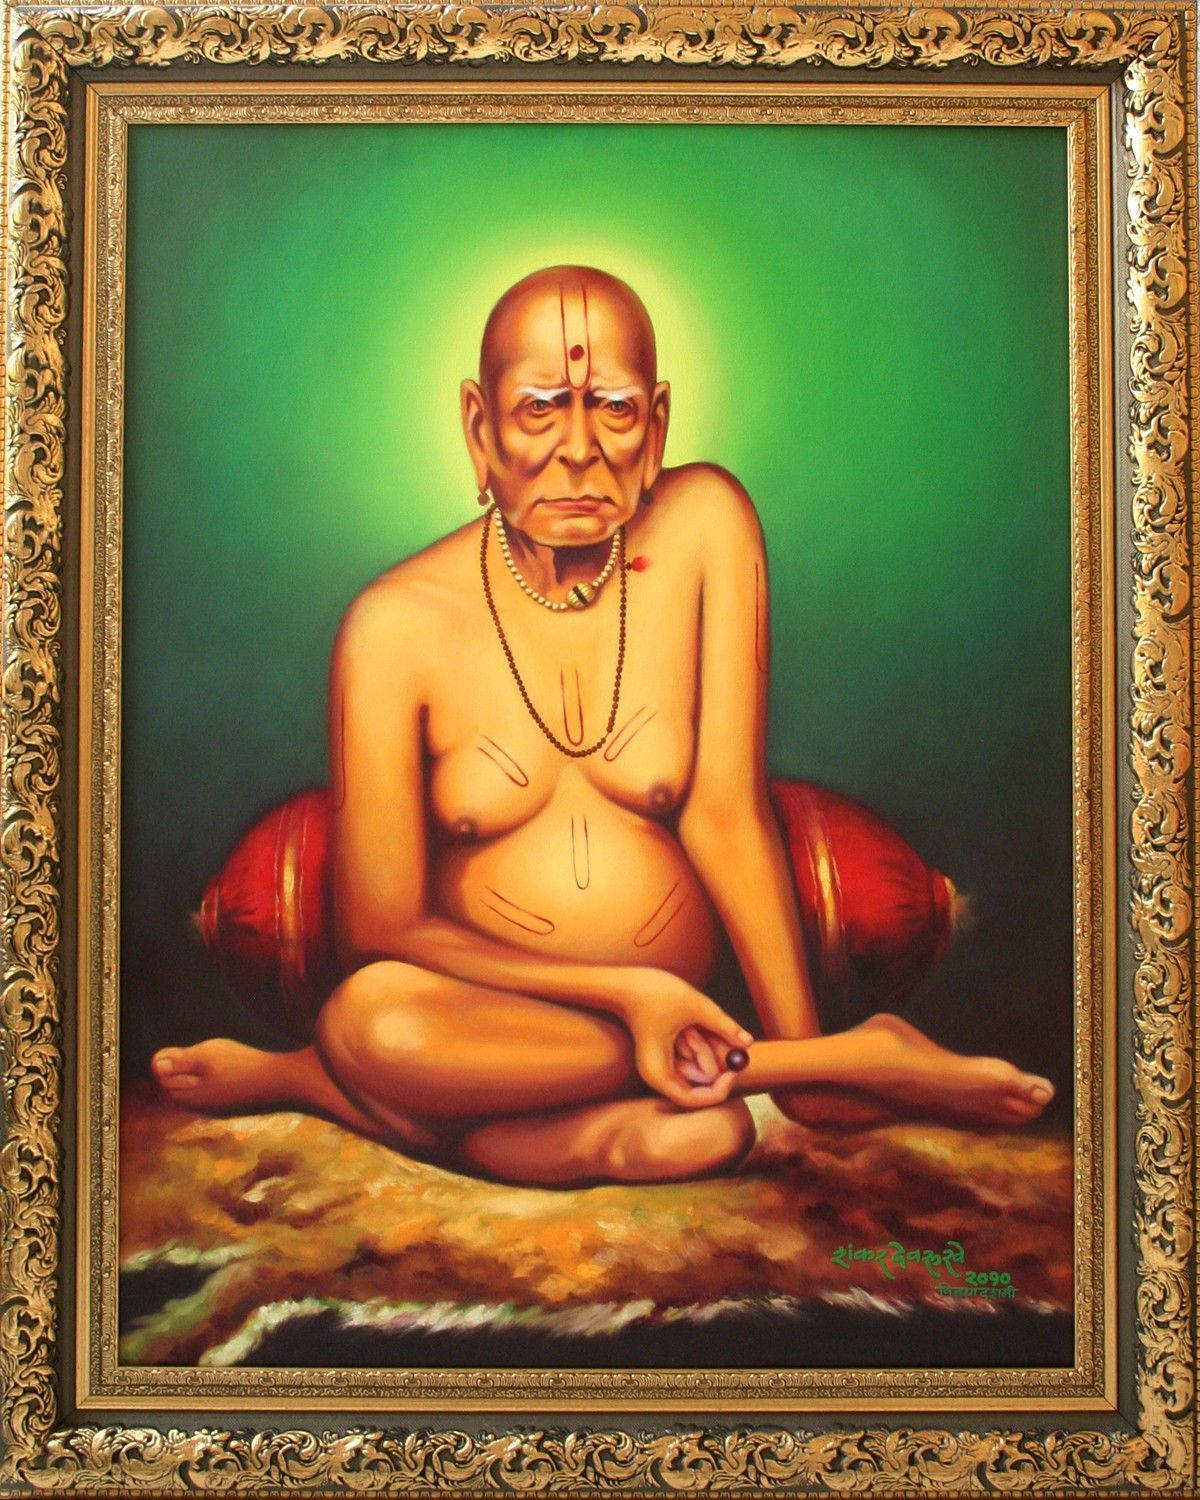 Shriswami Samarth Gerahmt Mit Grünem Hintergrund Wallpaper